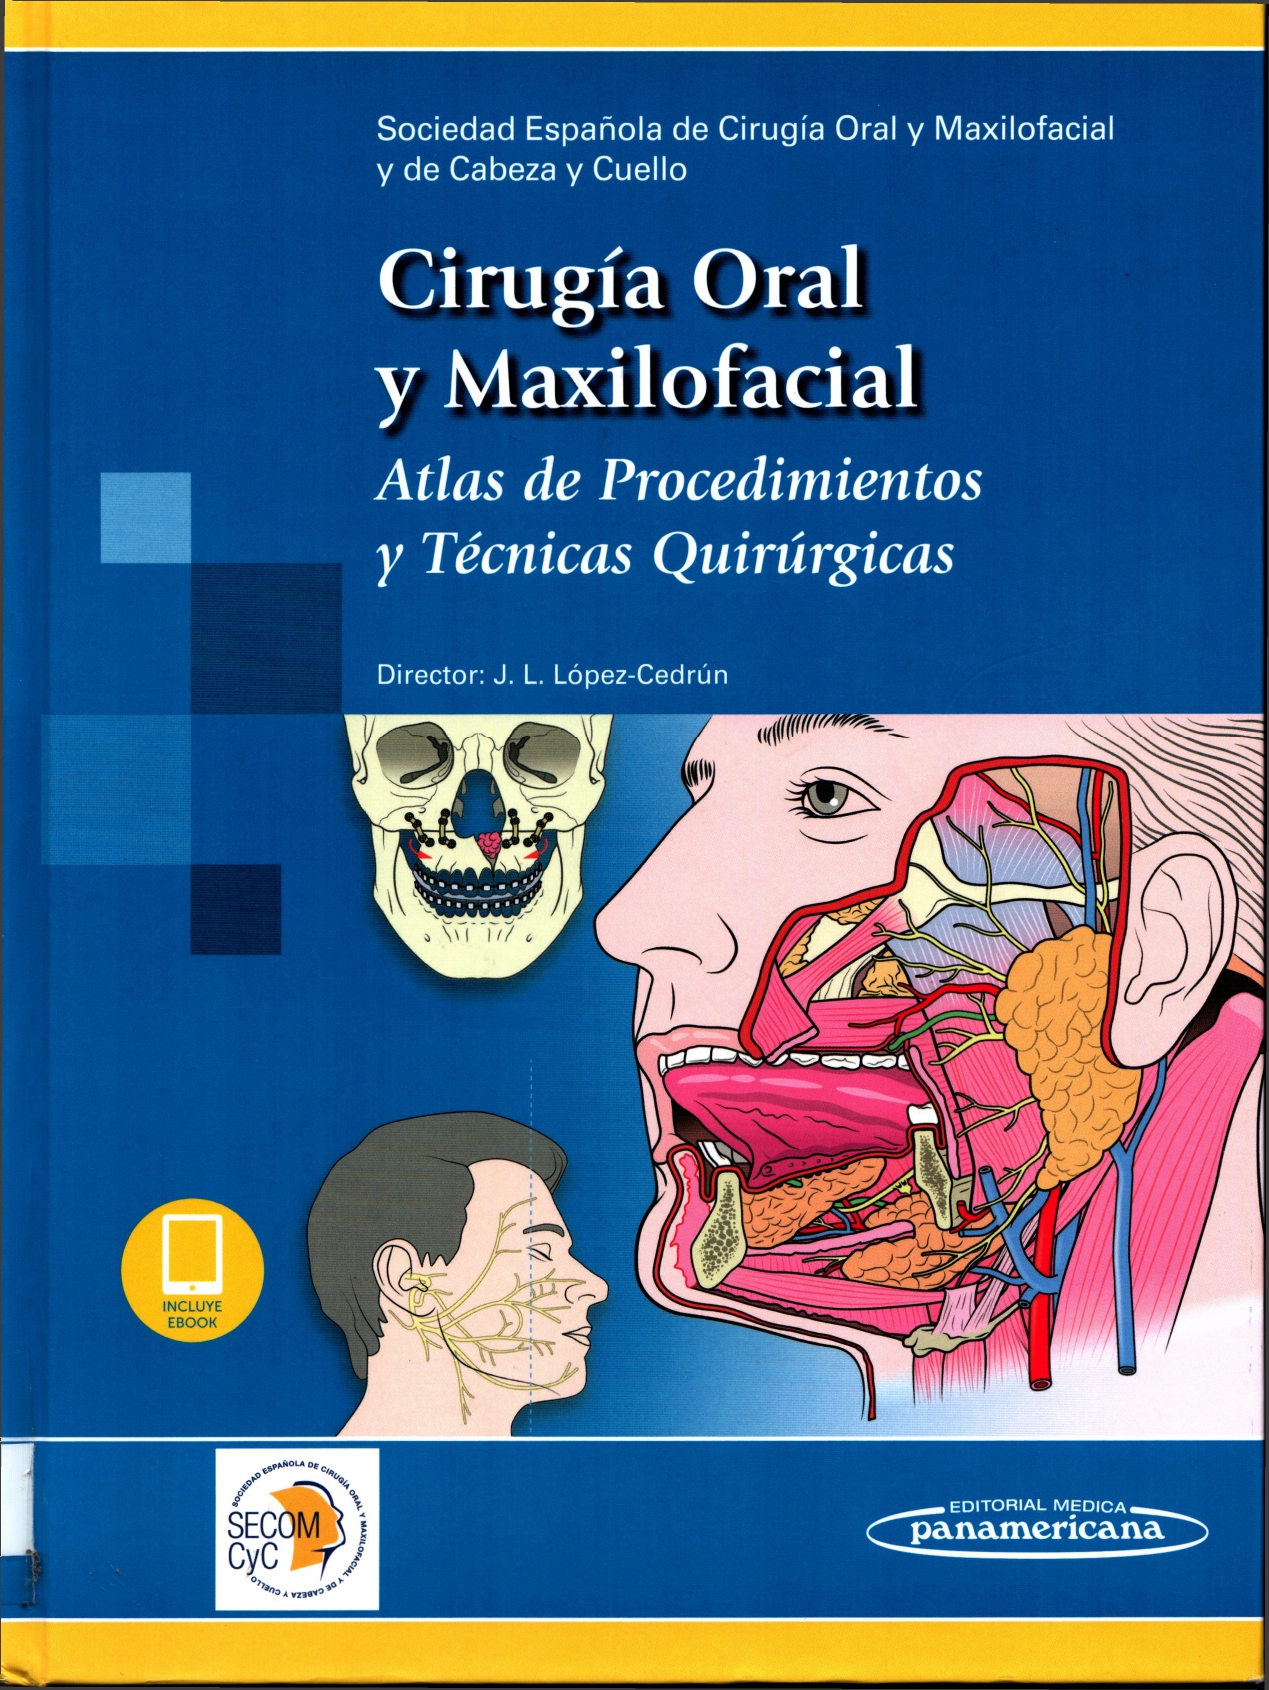 Imagen de portada del libro Cirugía oral y maxilofacial